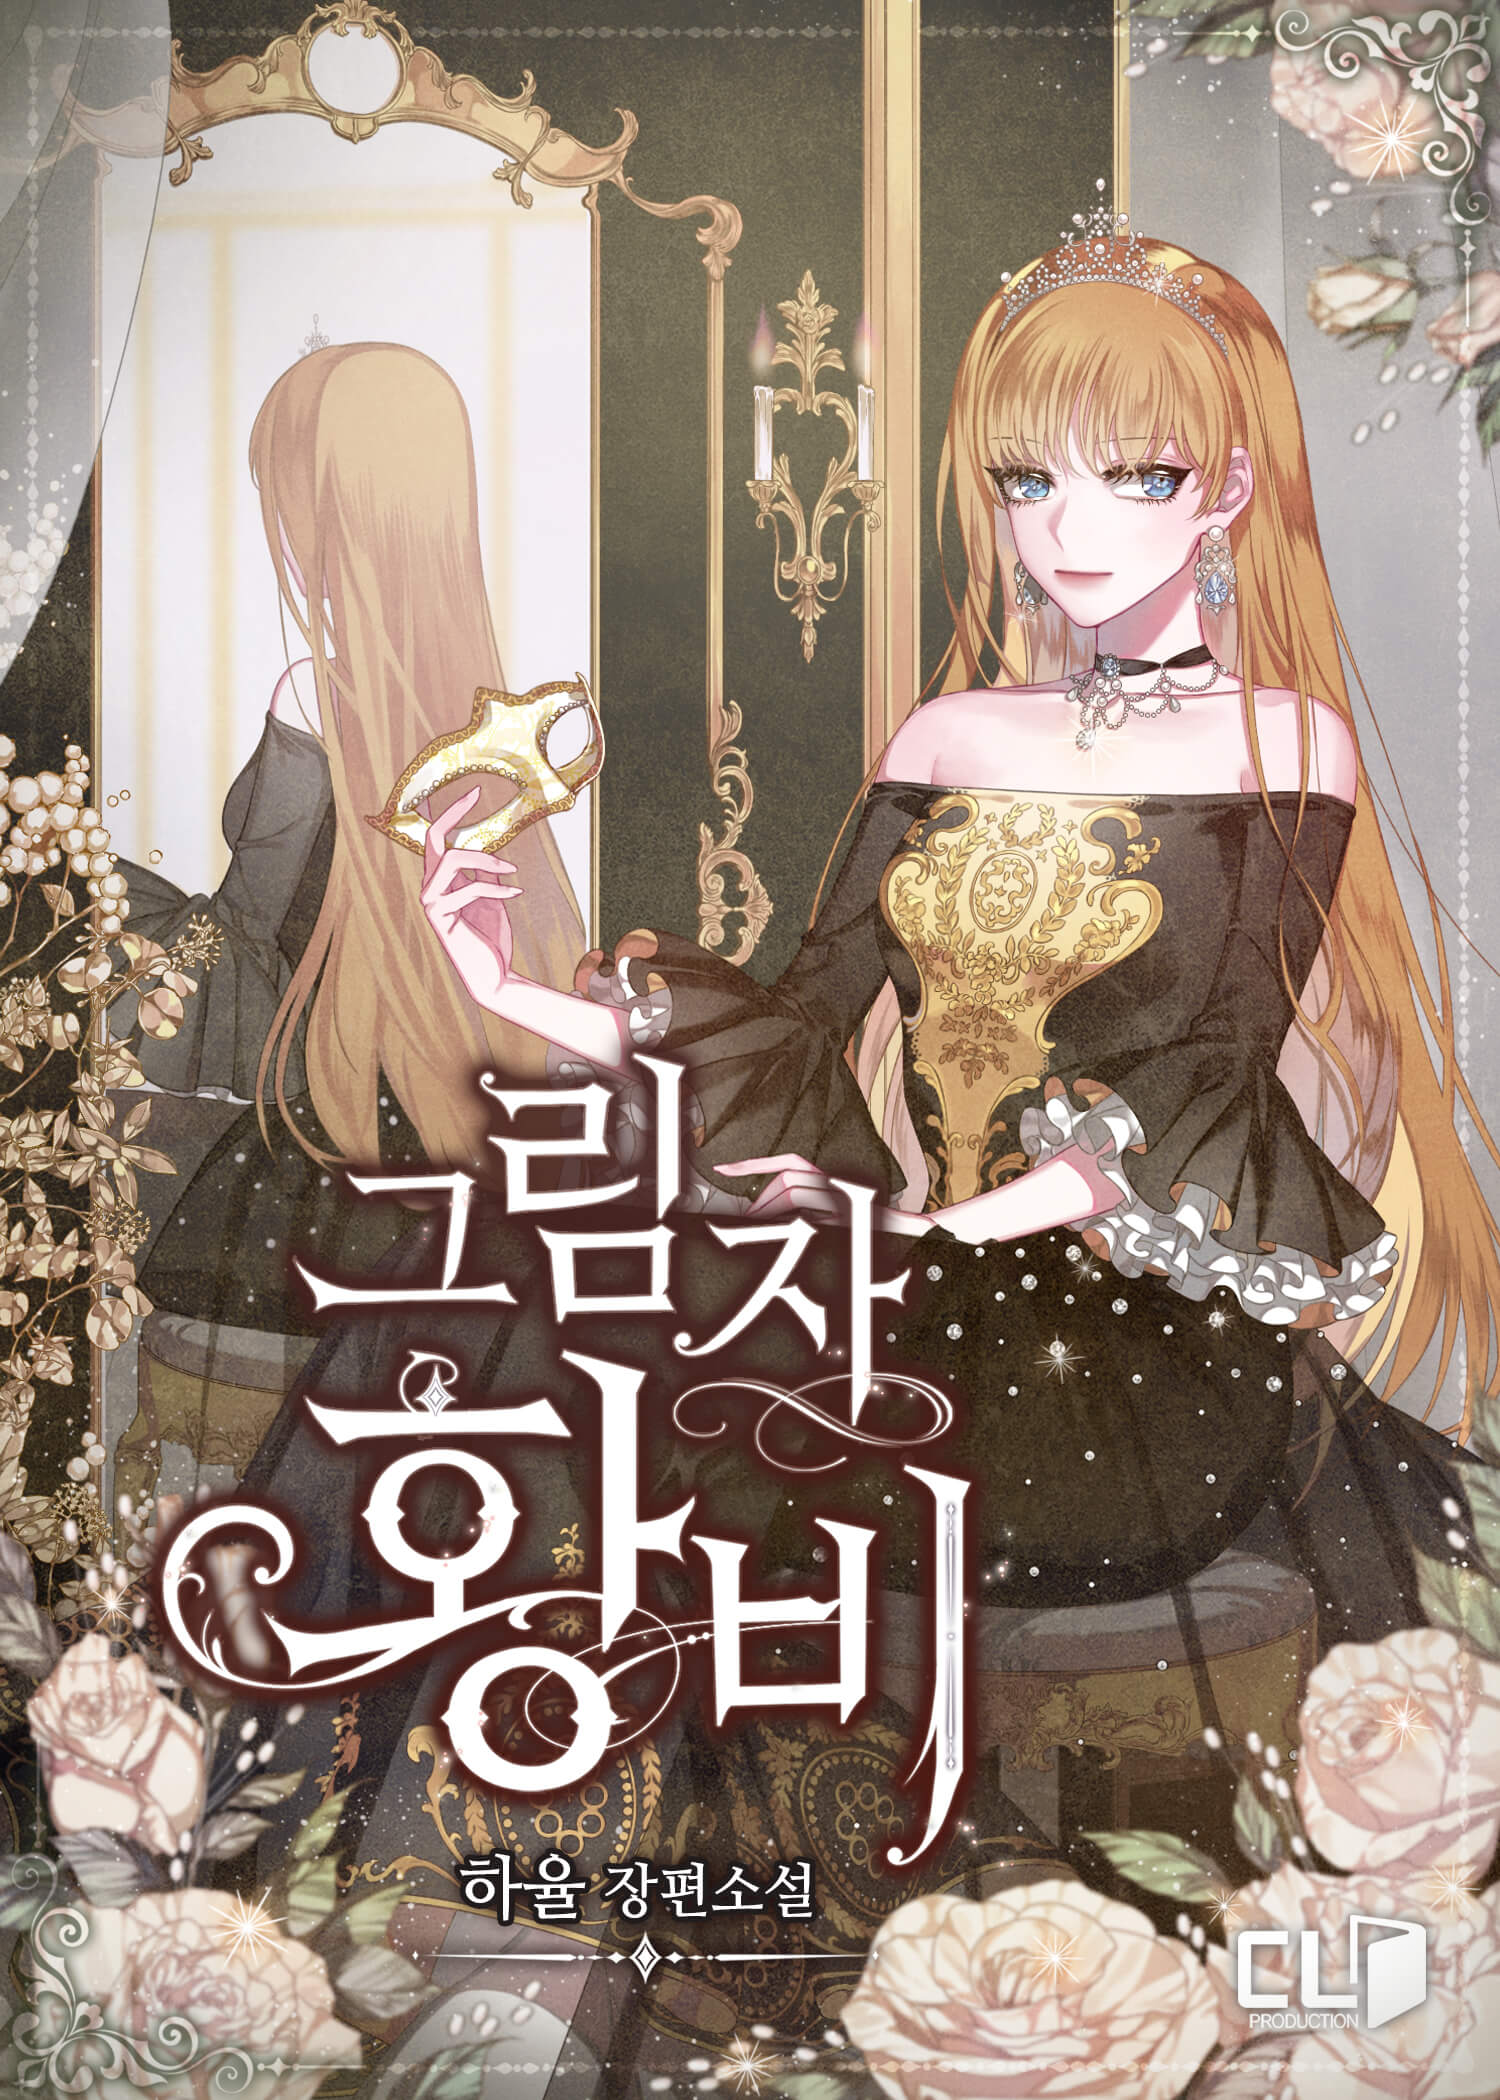 Shadow Queen - Novel Updates